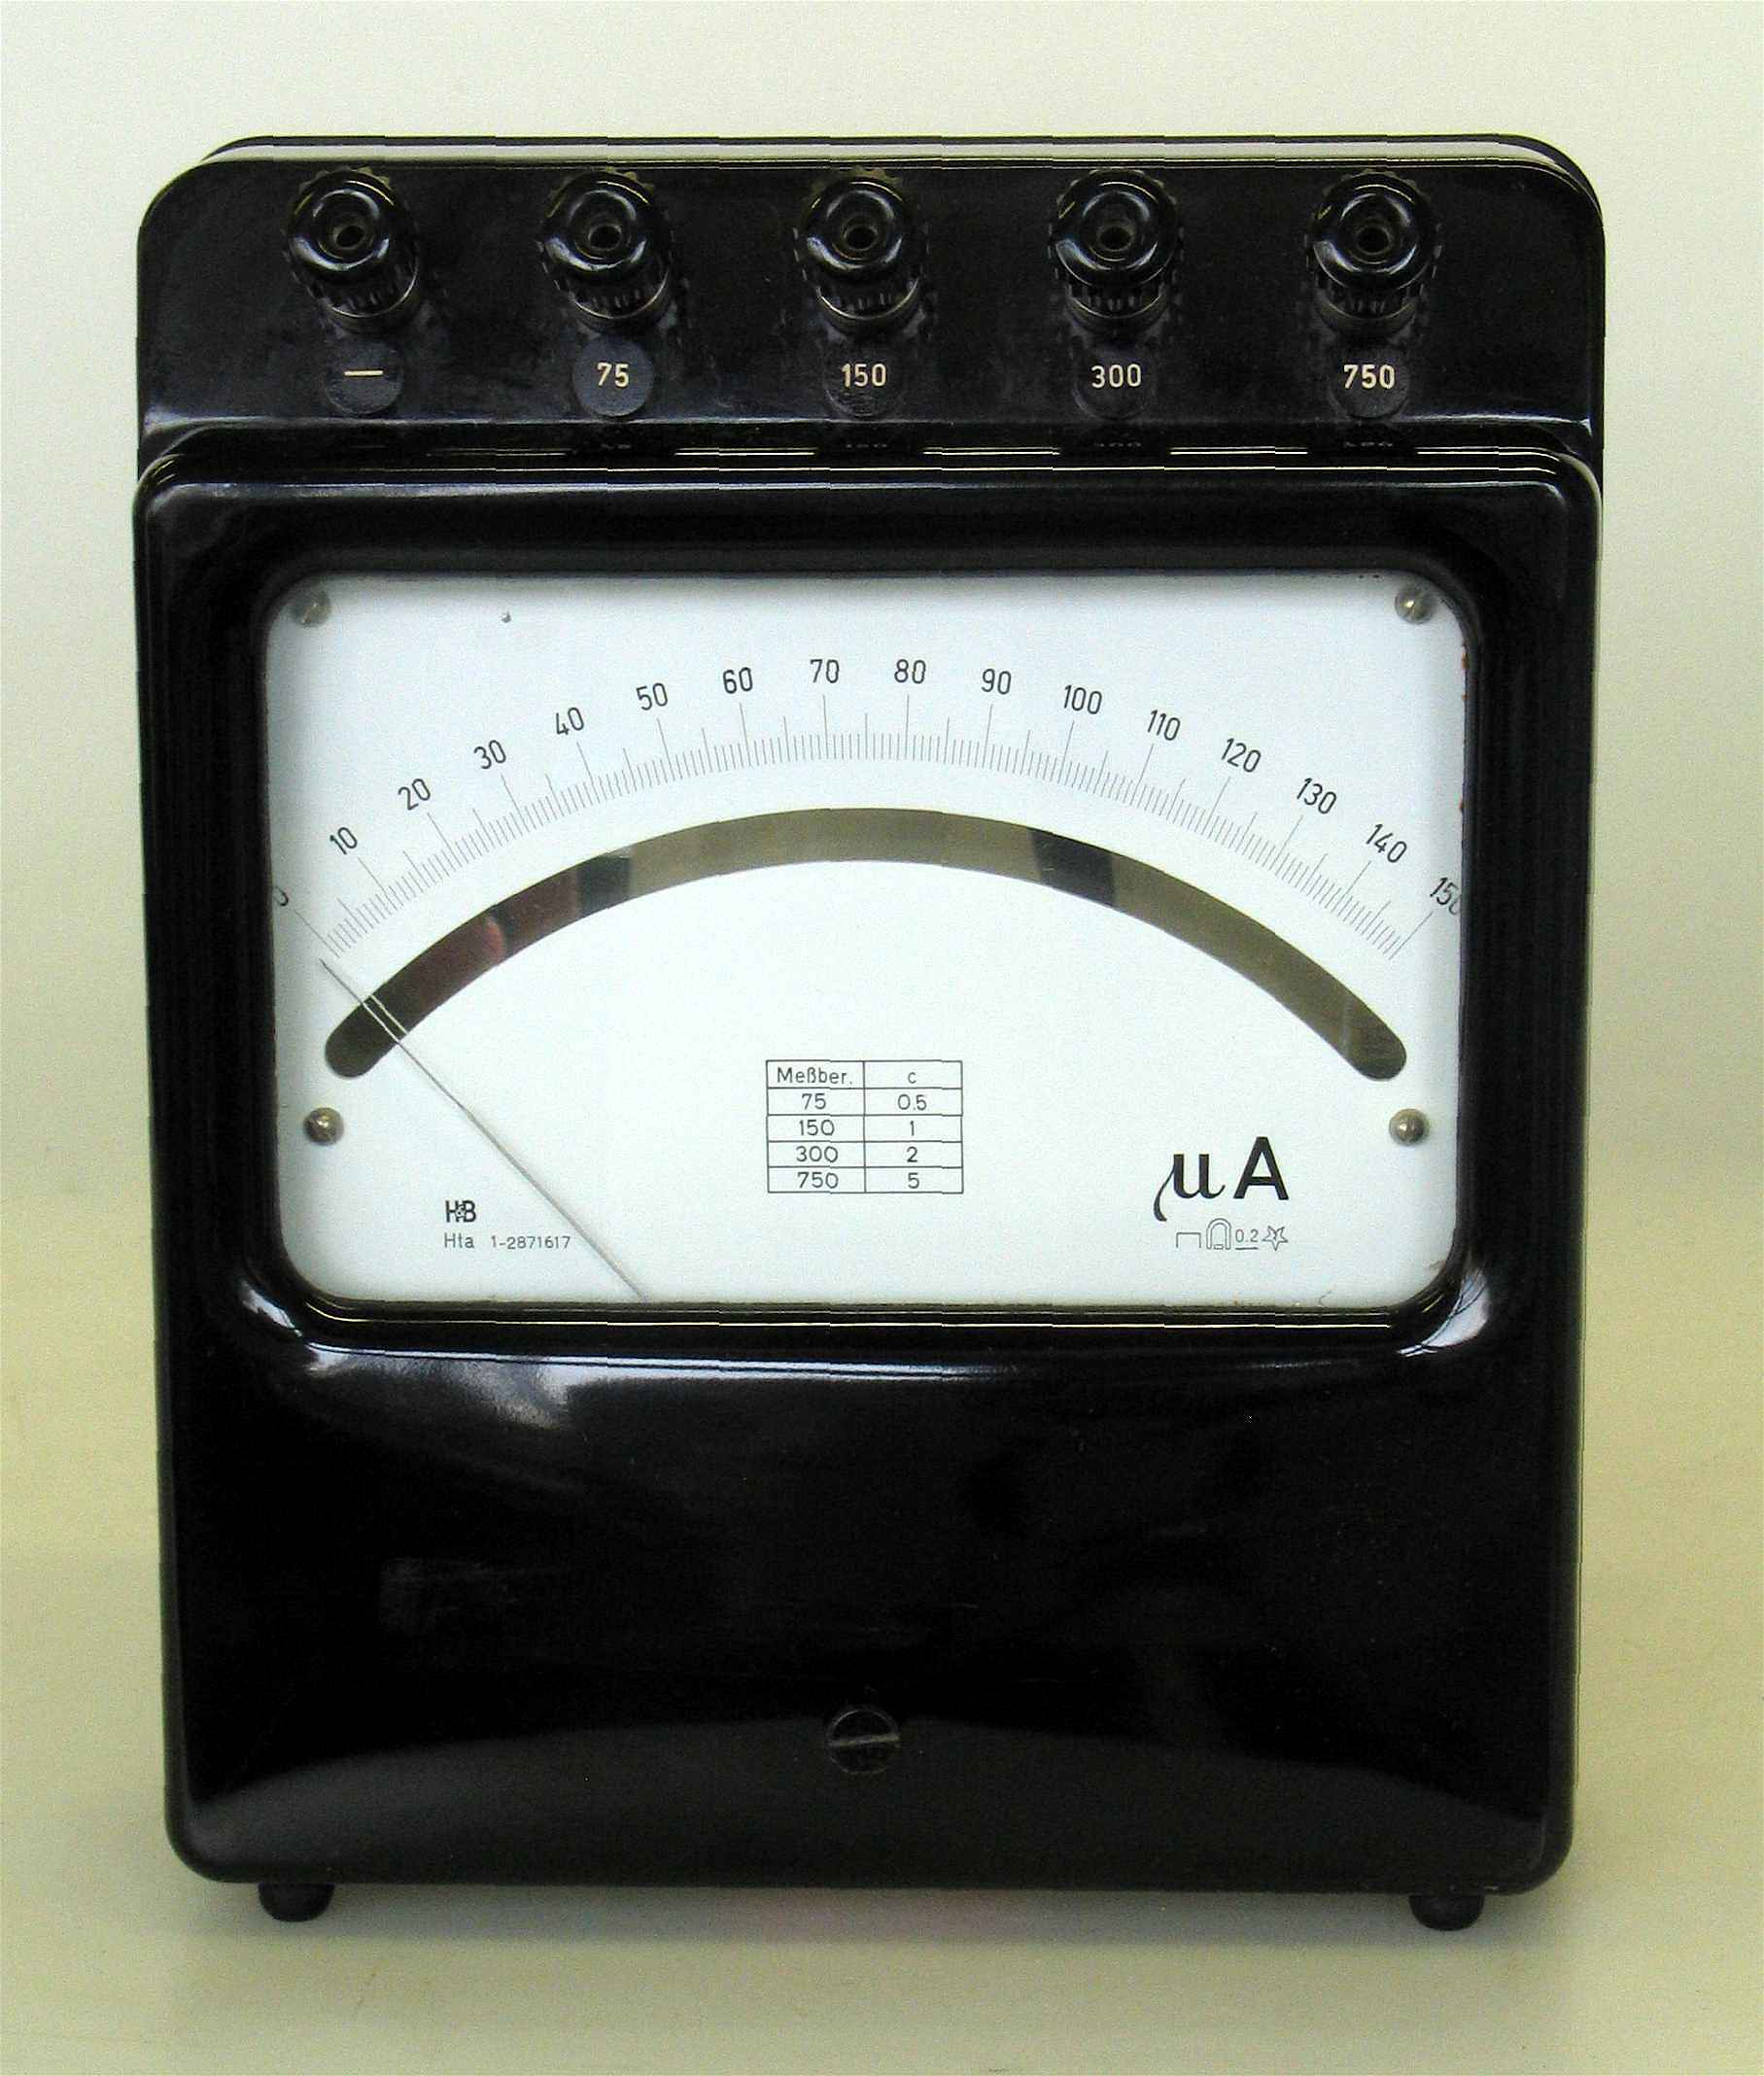 Microampèremètres portatif
(H&B Hta, 4 gammes)